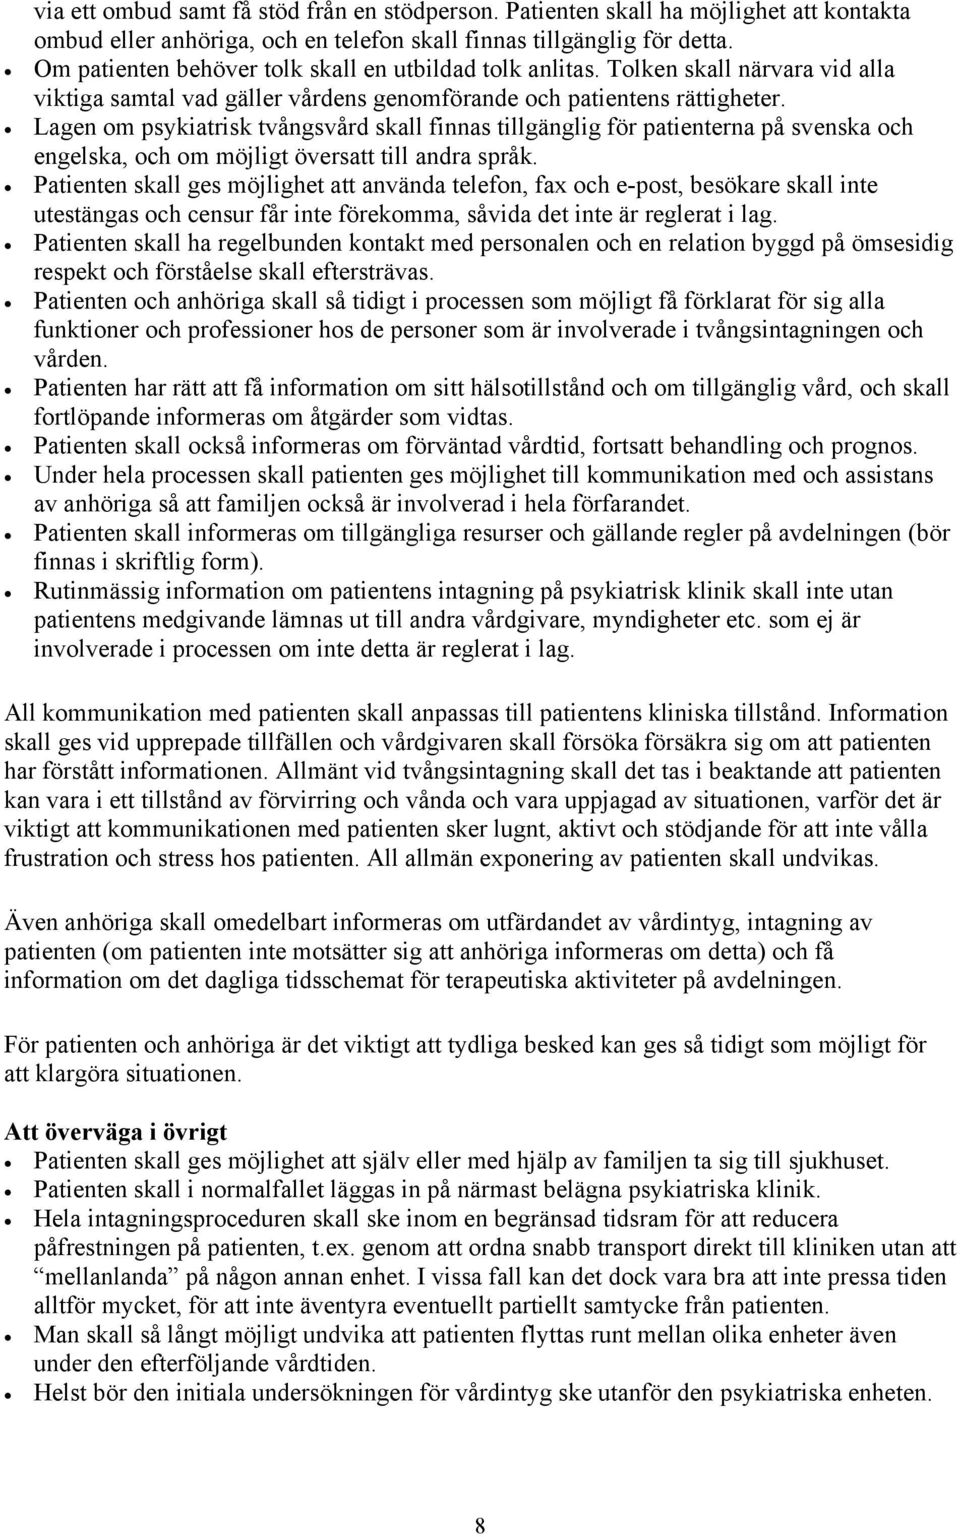 Lagen om psykiatrisk tvångsvård skall finnas tillgänglig för patienterna på svenska och engelska, och om möjligt översatt till andra språk.